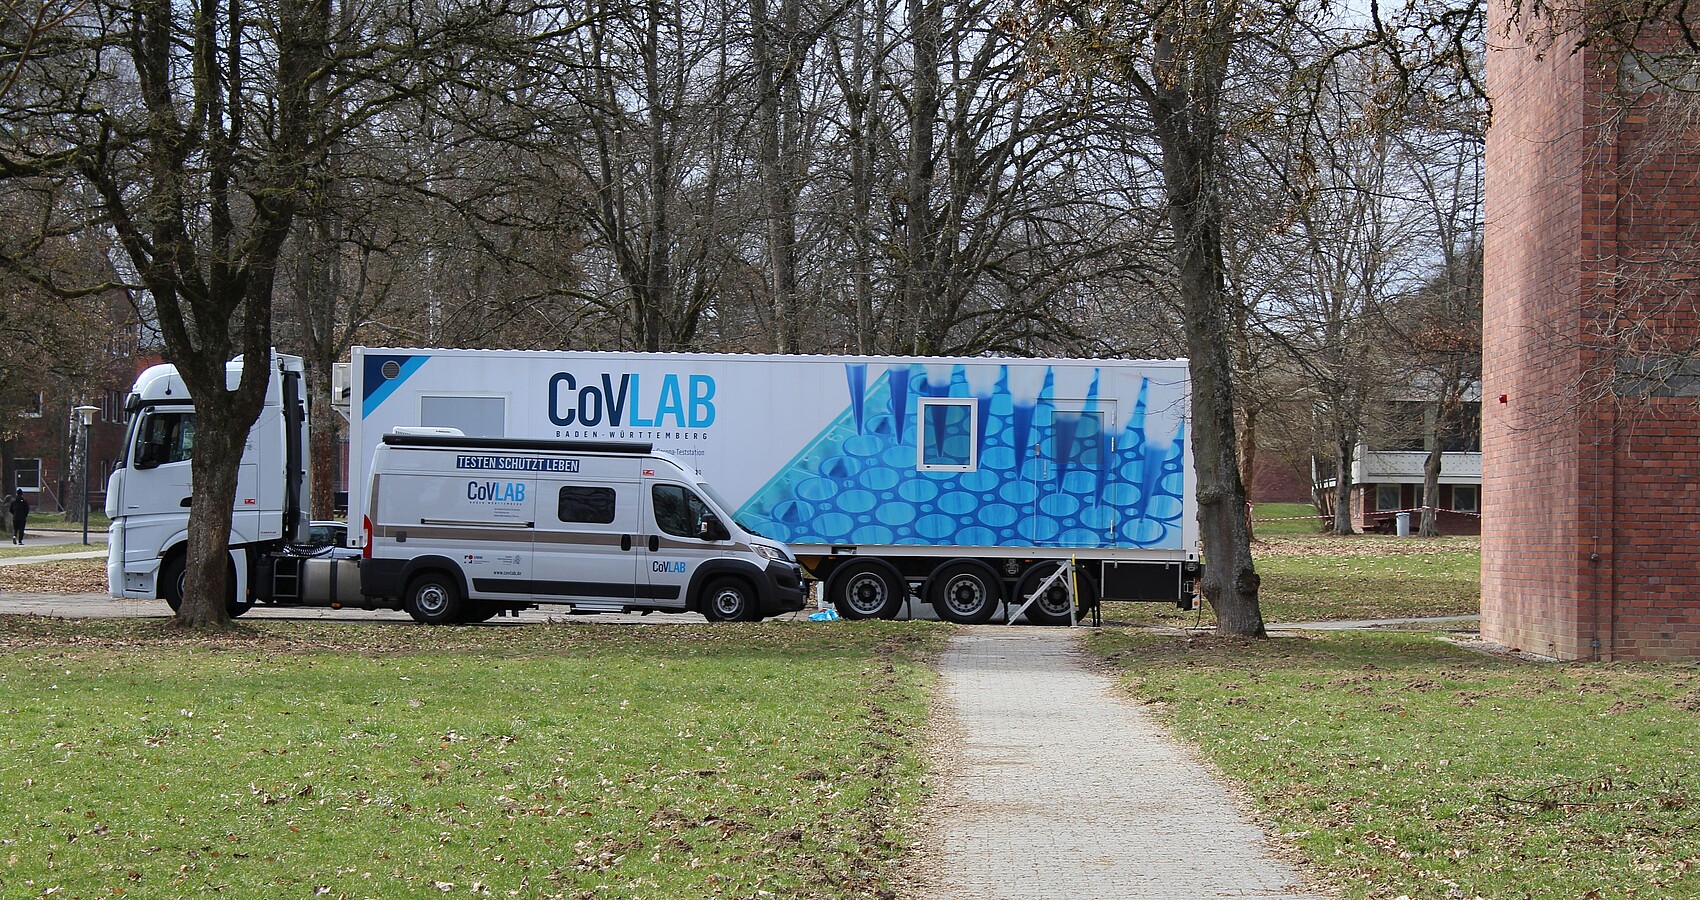 Mobile Corona-Teststation CoVLAB der Baden-Württemberg Stiftung